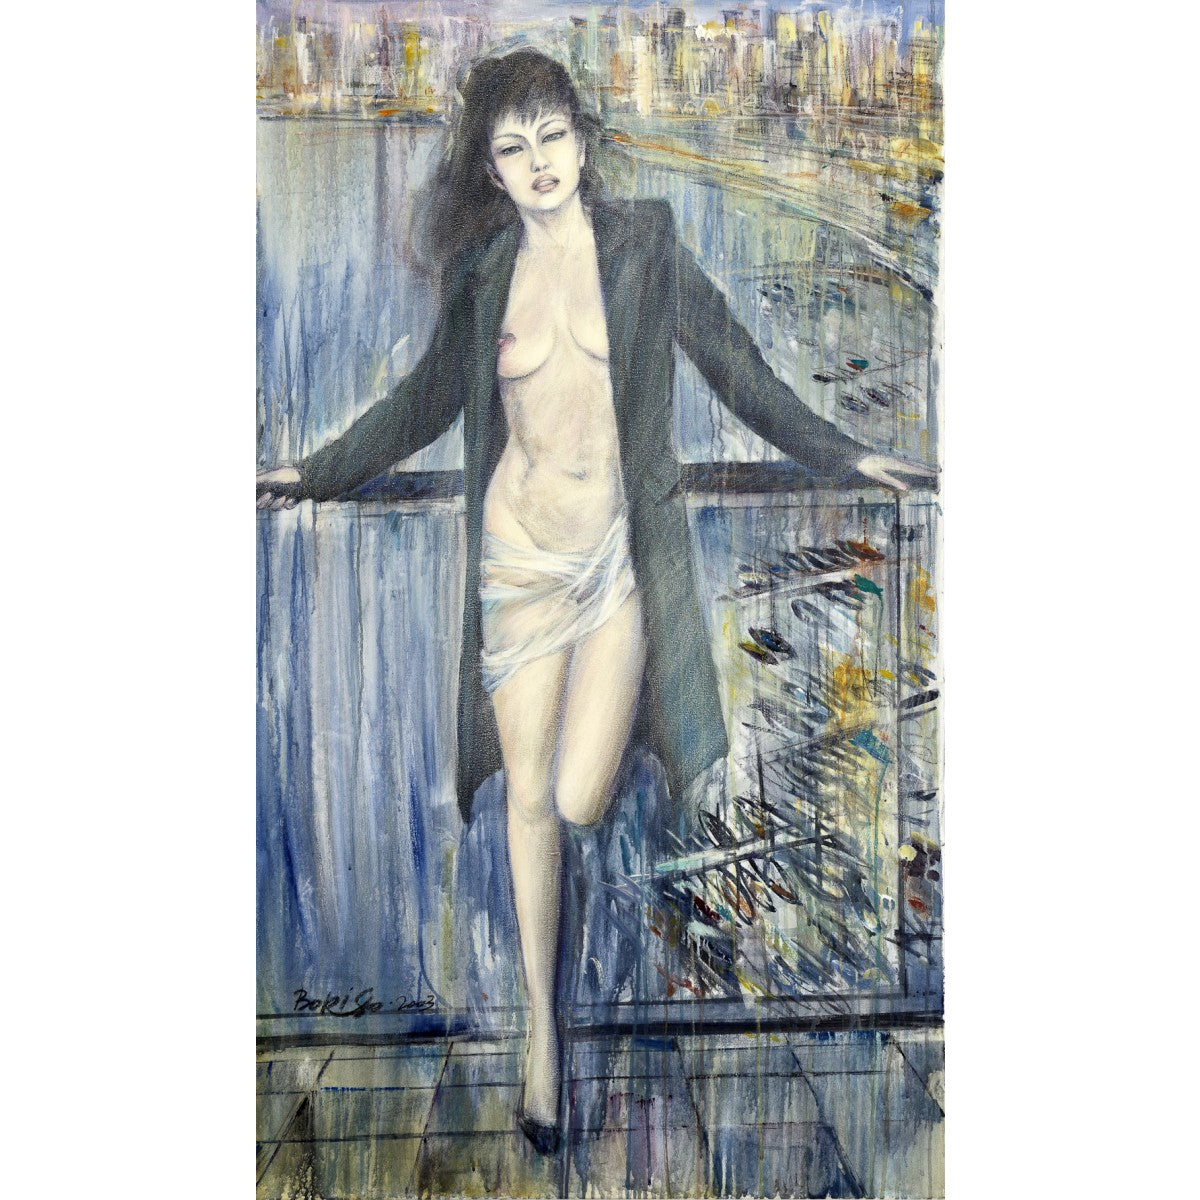 Half Naked Woman by Boris Vinokurov